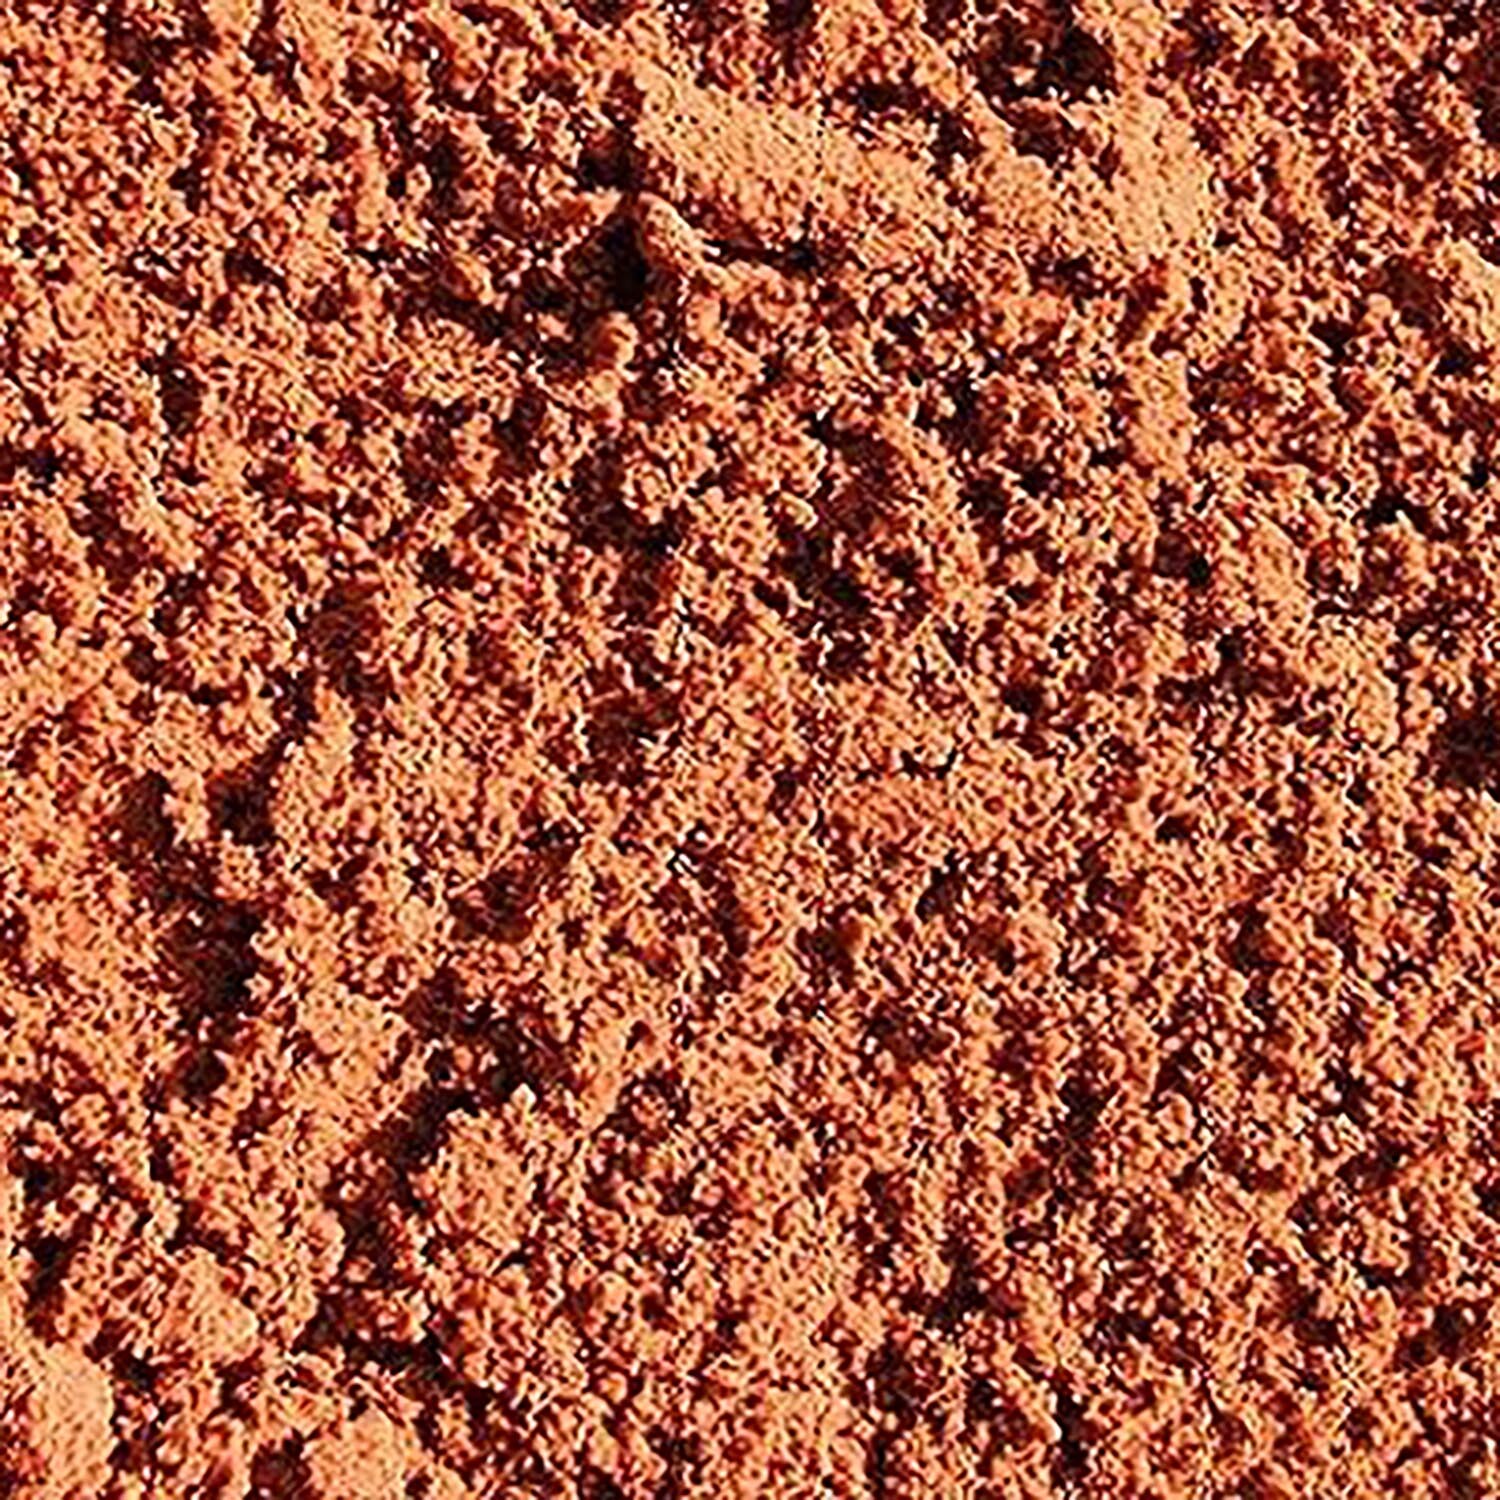 Red Building Sand 20kg Image